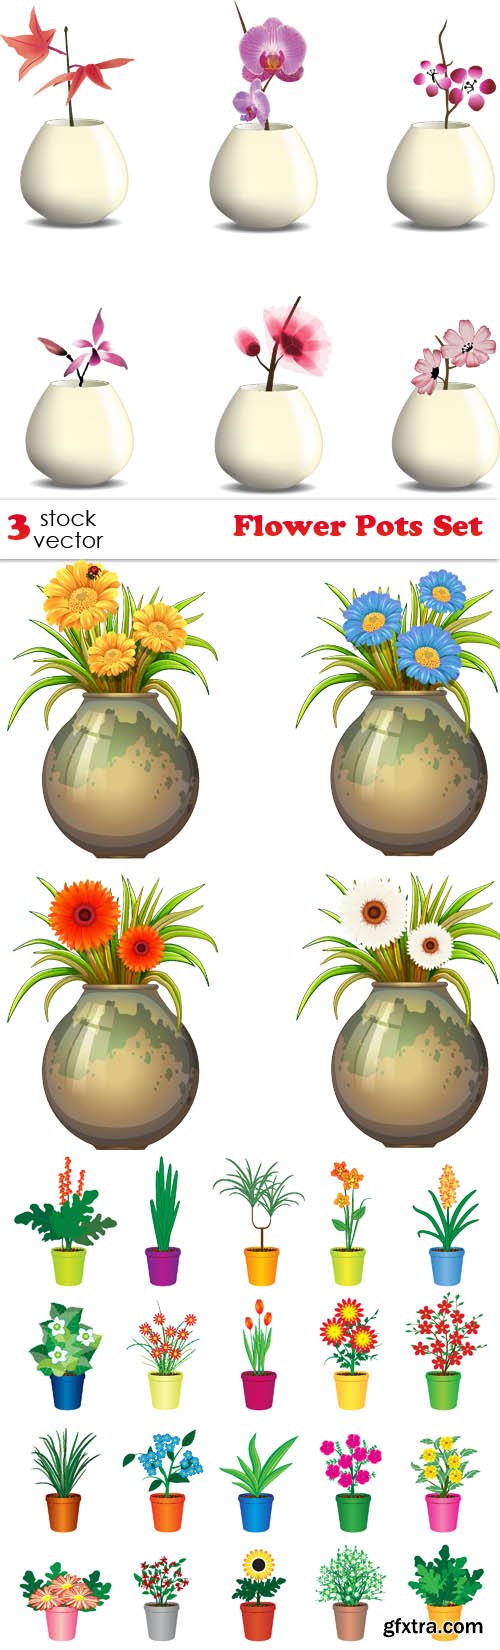 Vectors - Flower Pots Set